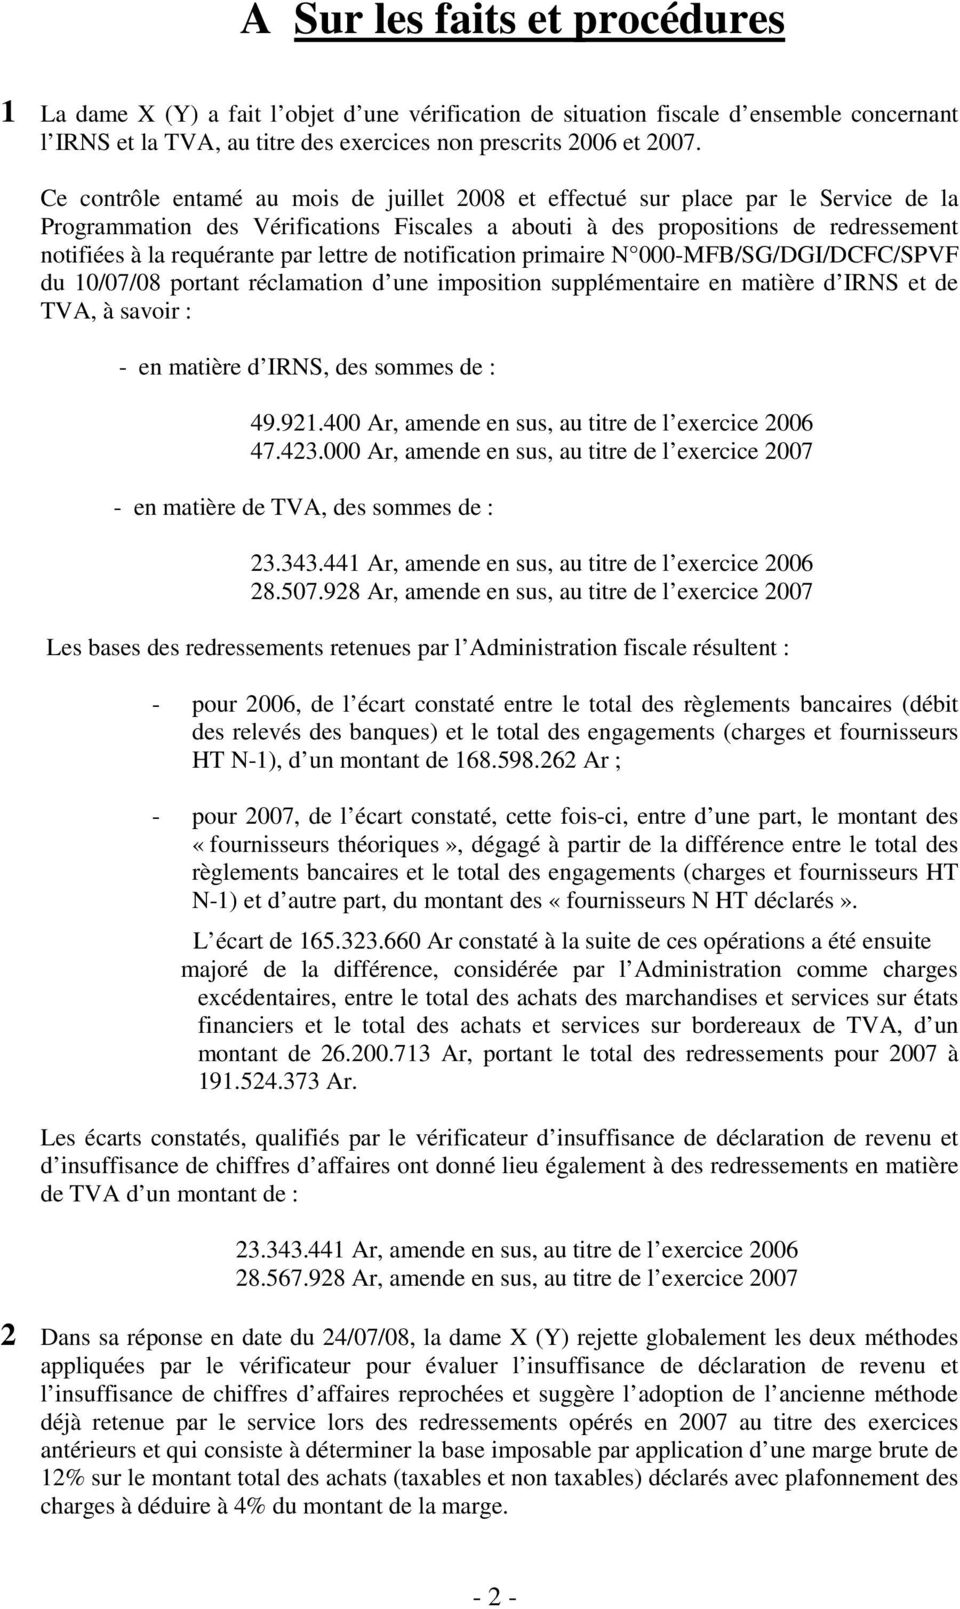 par lettre de notification primaire N 000-MFB/SG/DGI/DCFC/SPVF du 10/07/08 portant réclamation d une imposition supplémentaire en matière d IRNS et de TVA, à savoir : - en matière d IRNS, des sommes